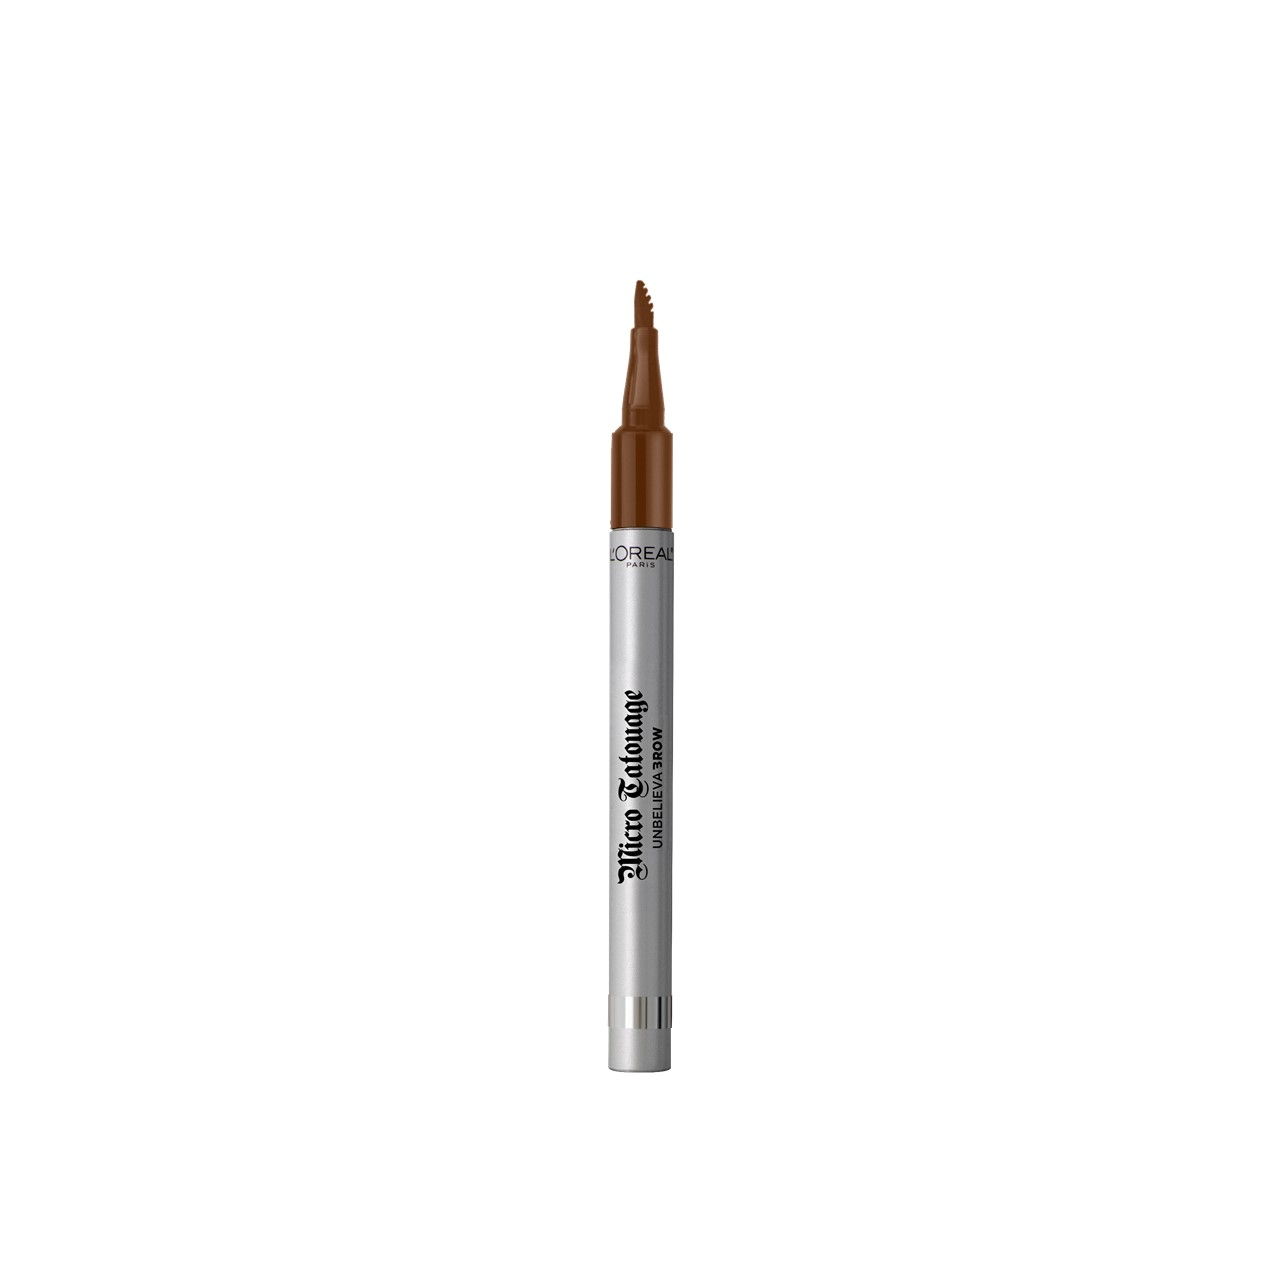 L'Oréal Paris Unbelievabrow Micro Tatouage Brow Pen 105 Brunette